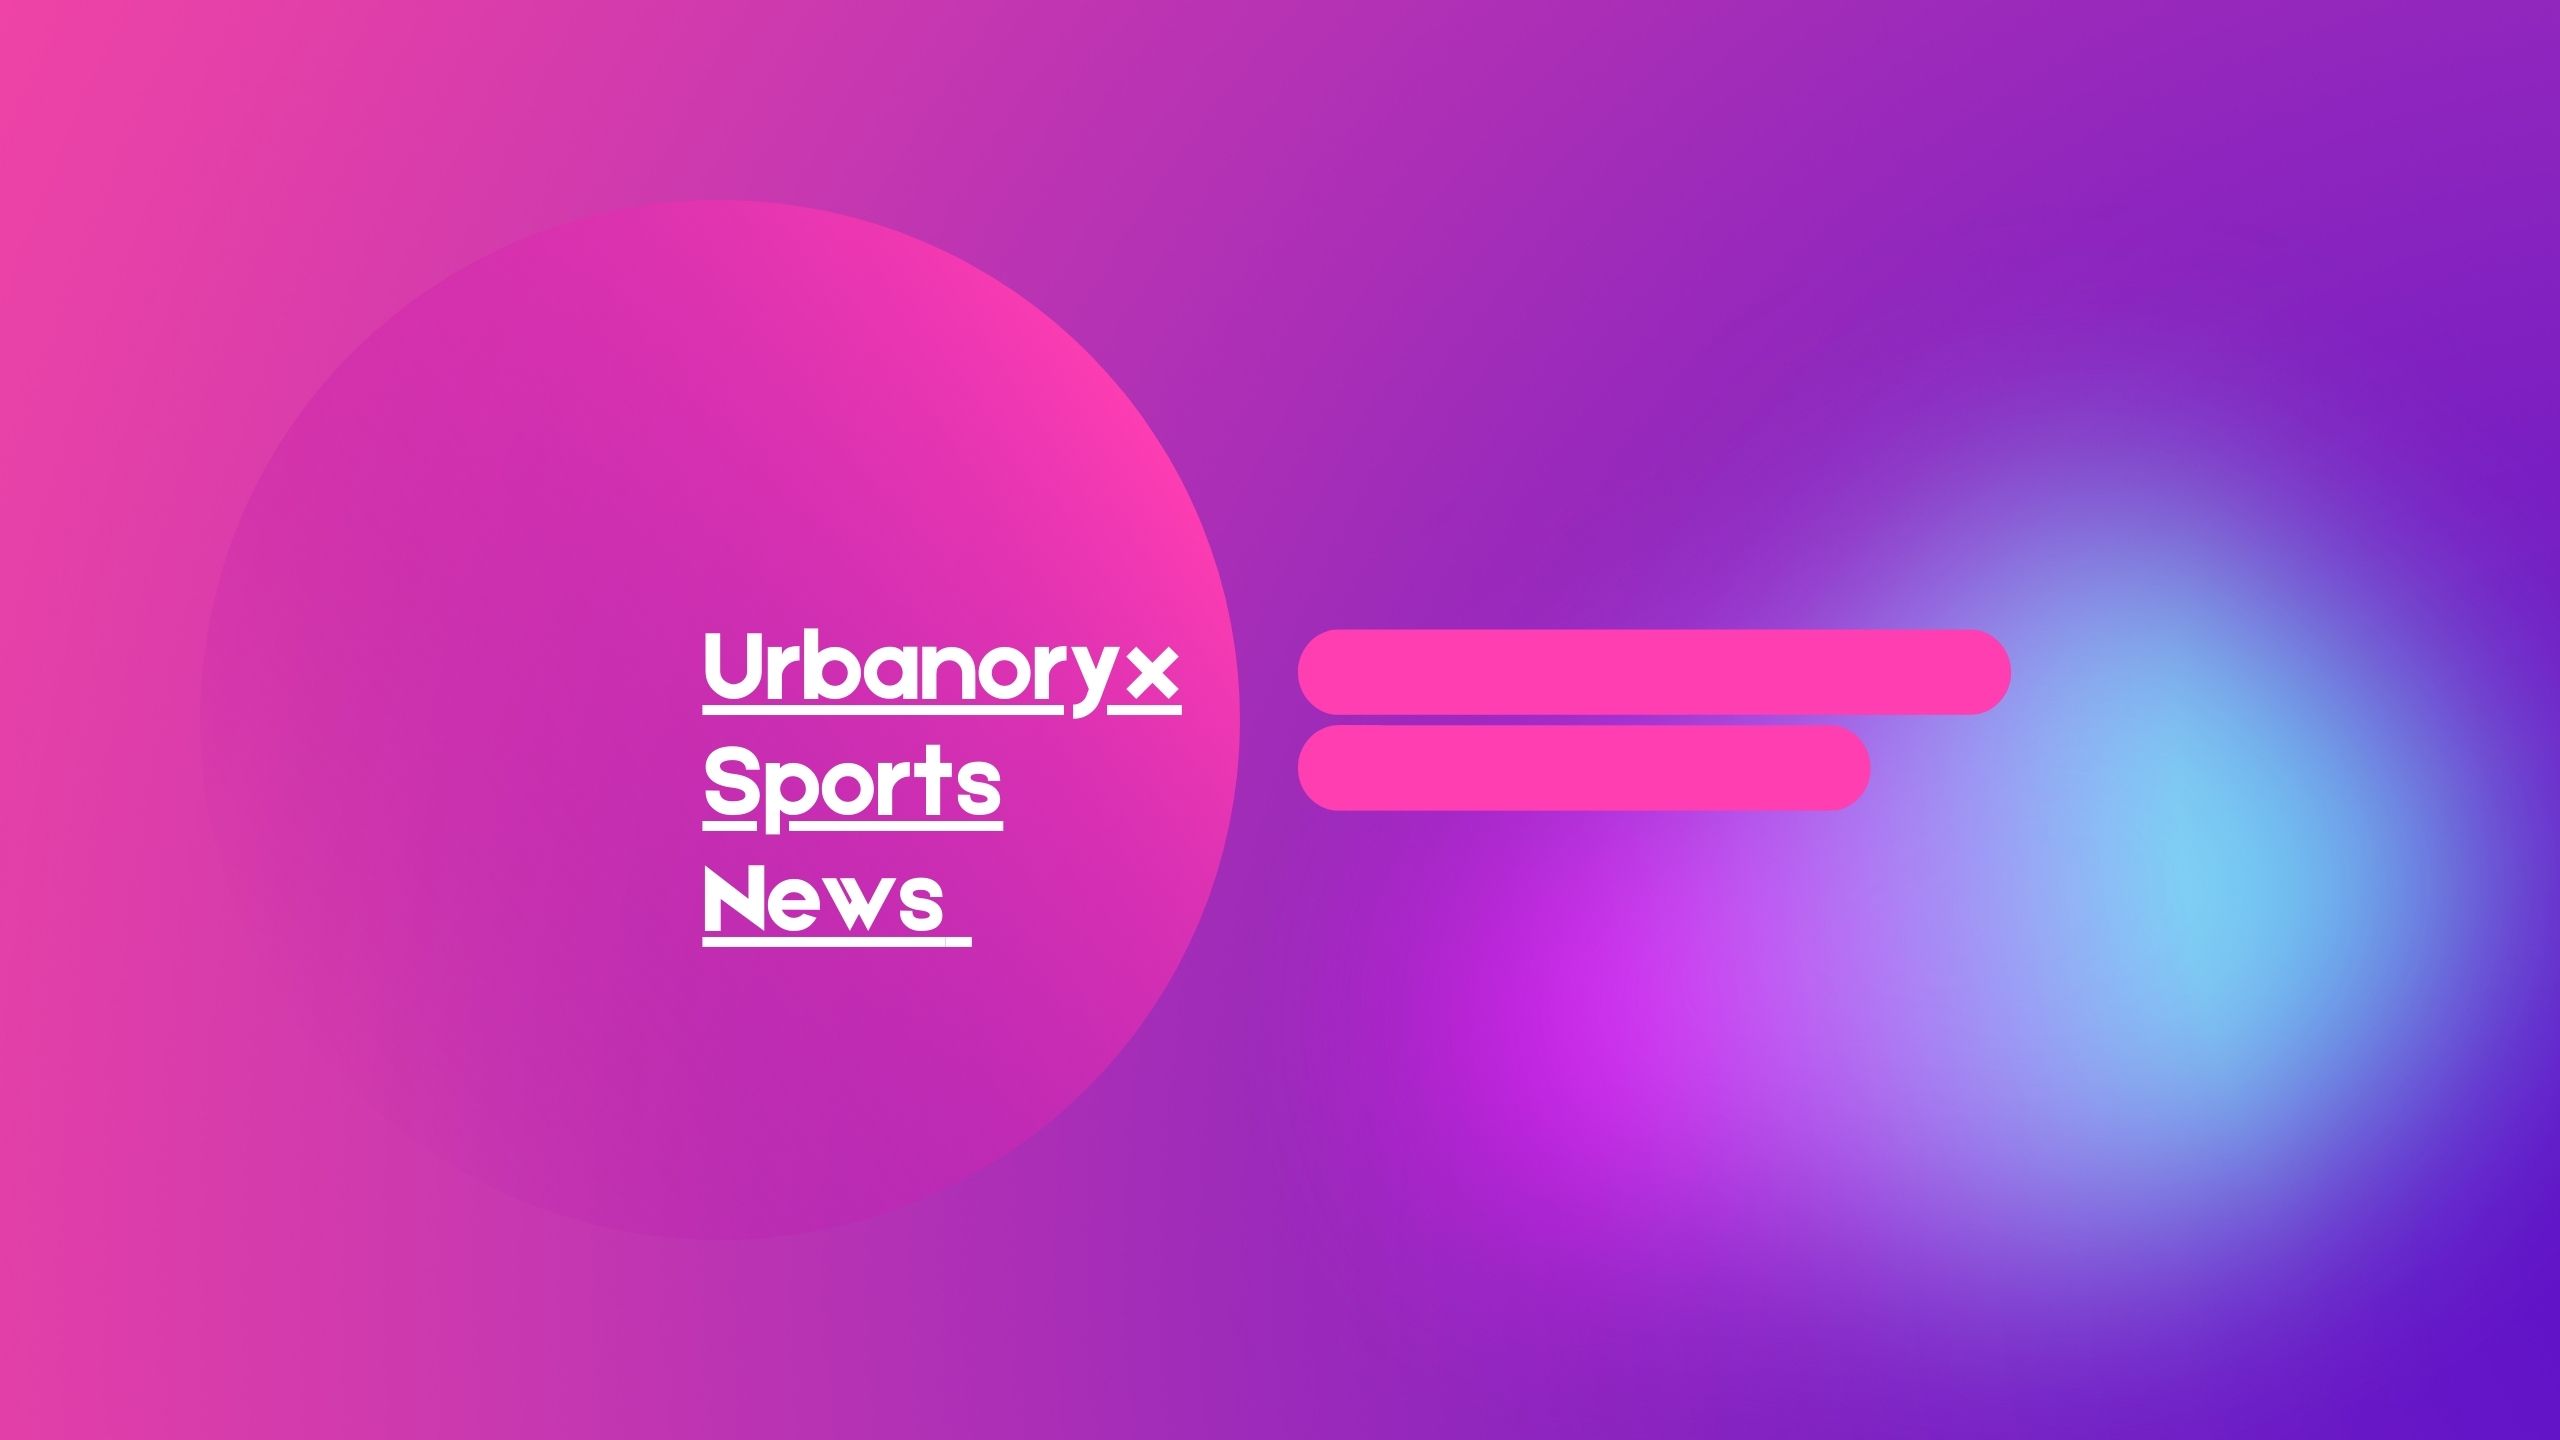 Urbanoryx